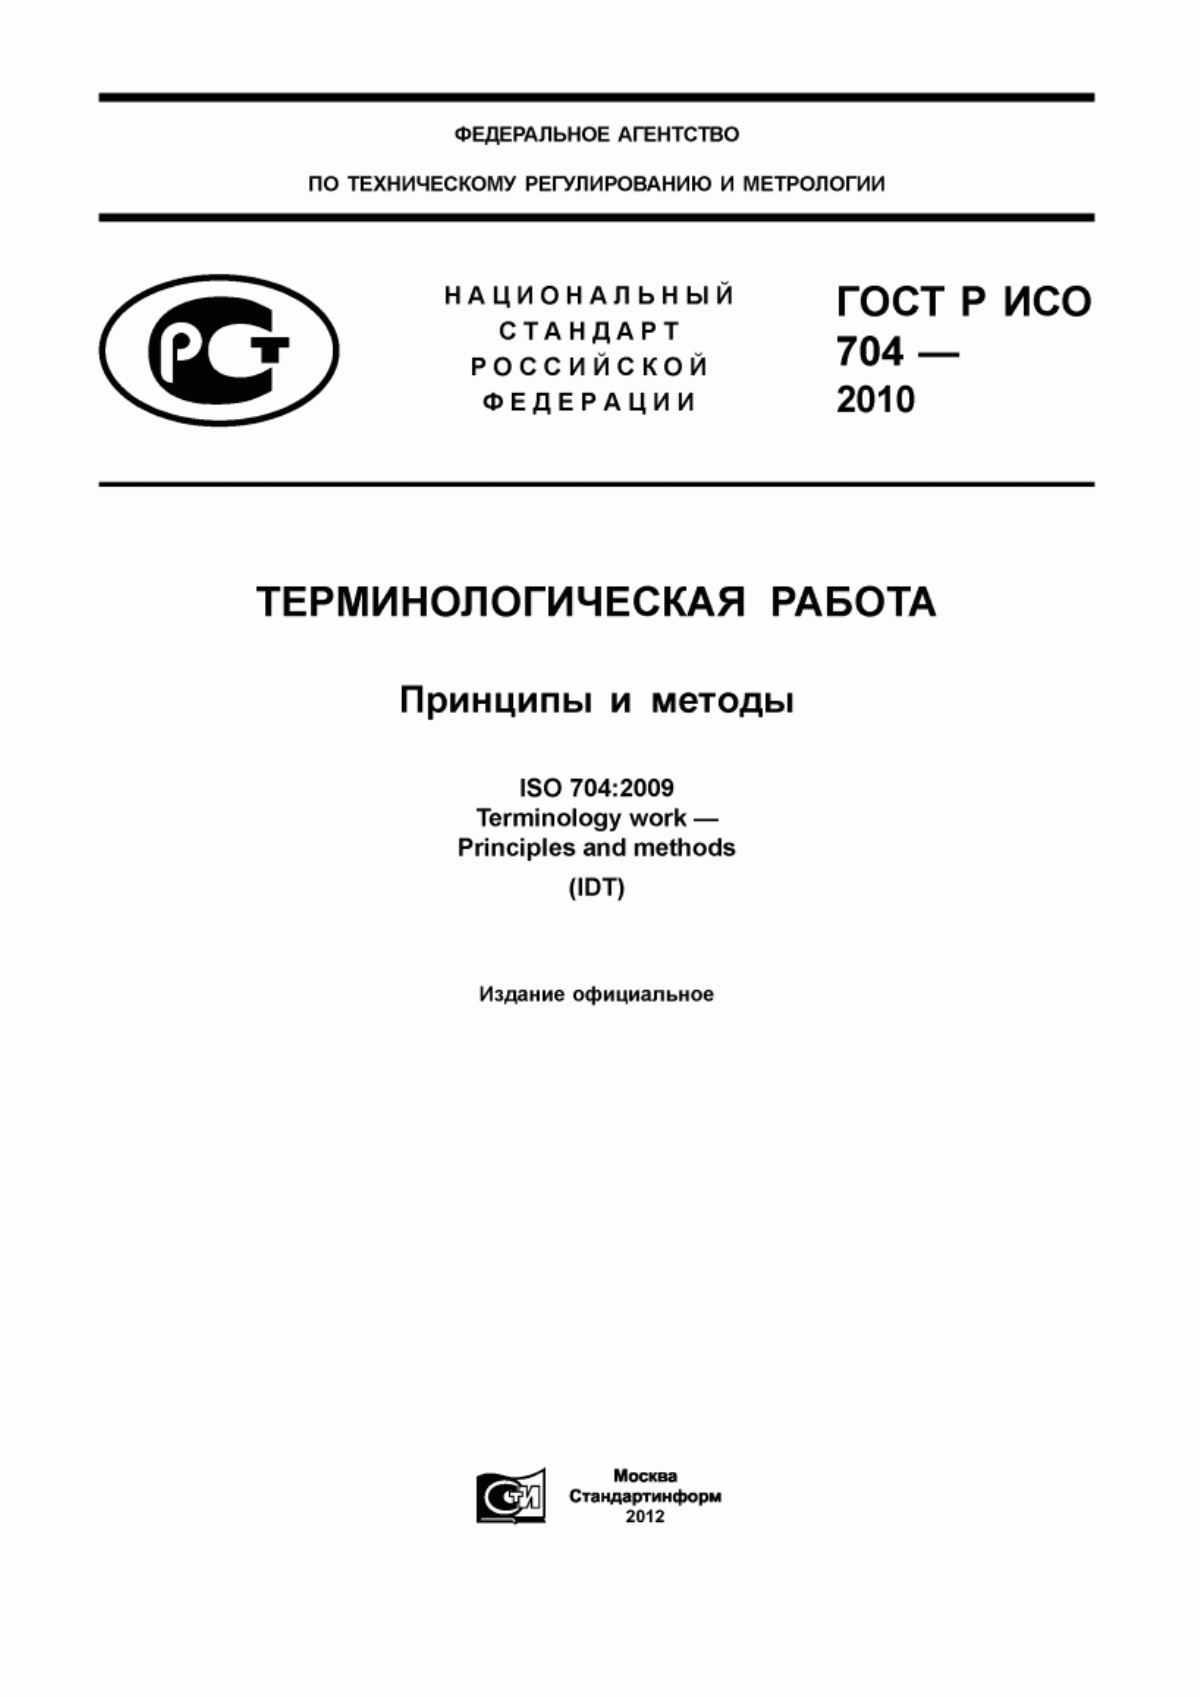 ГОСТ Р ИСО 704-2010 Терминологическая работа. Принципы и методы